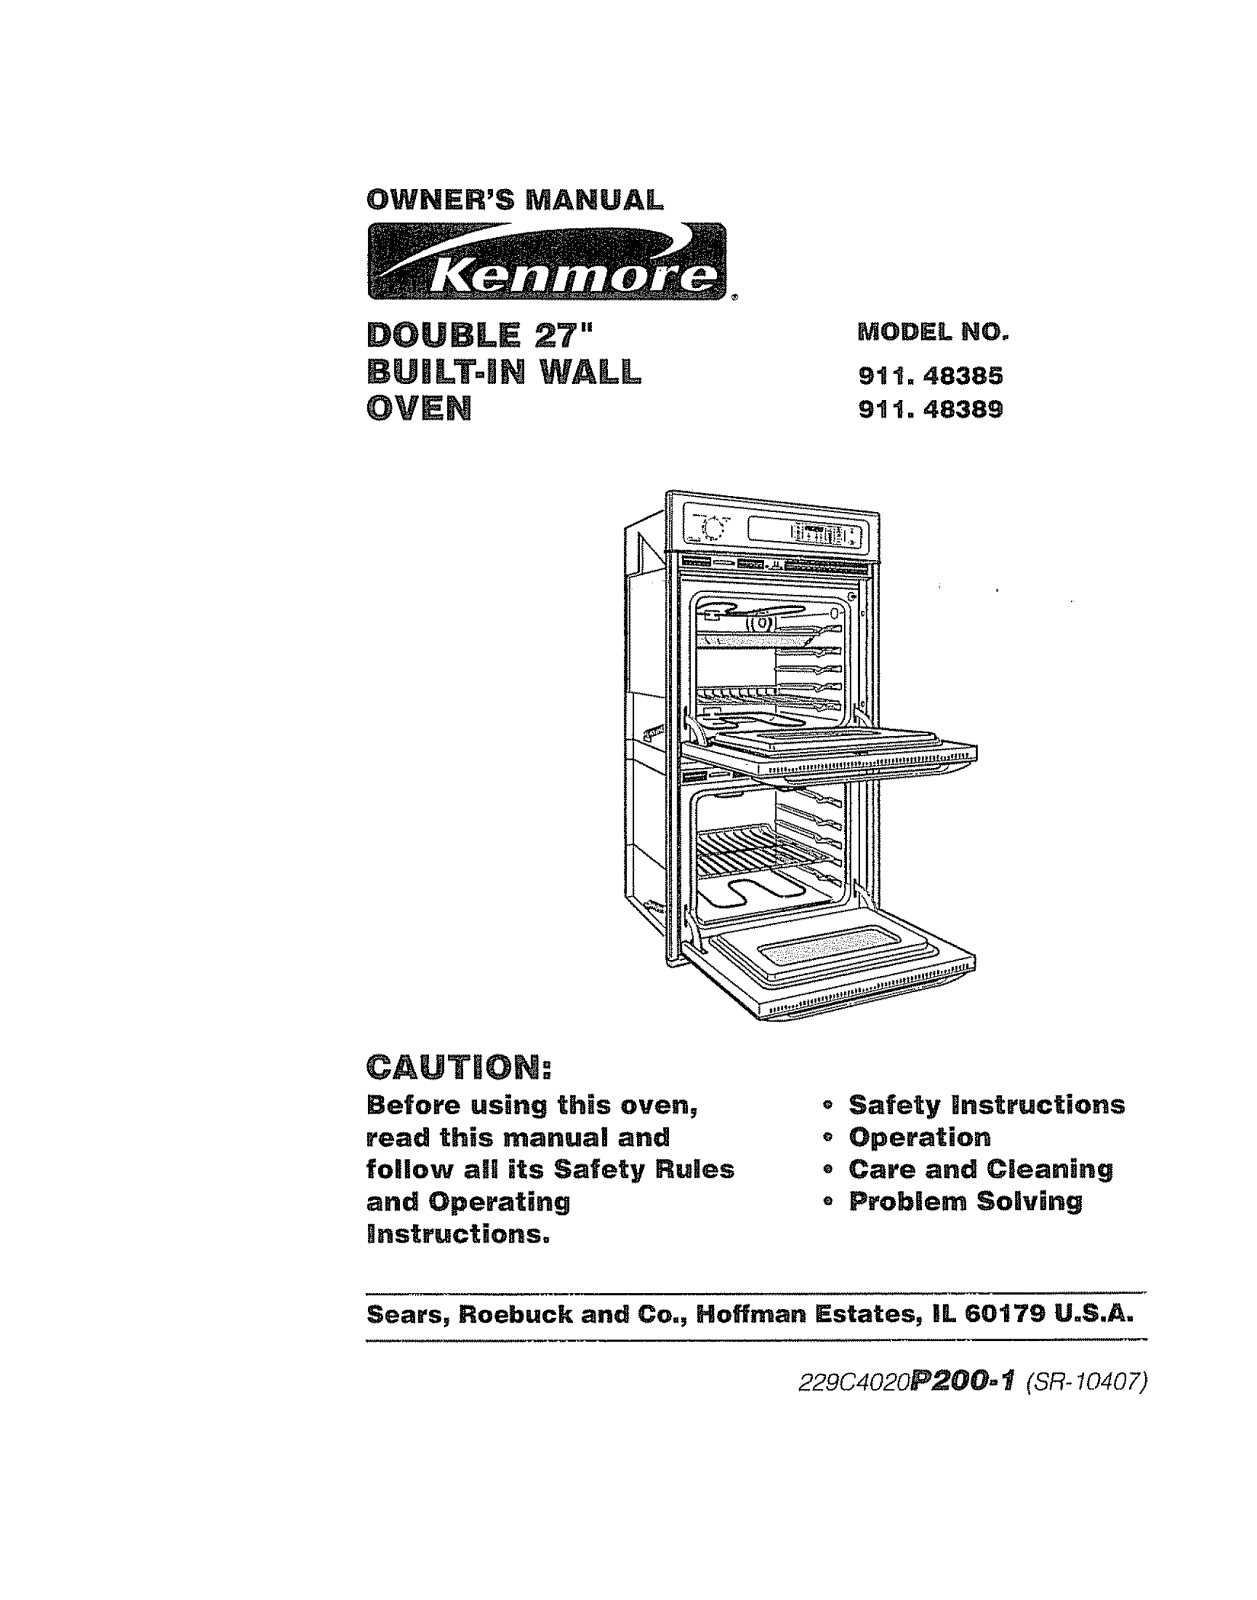 Kenmore 91148385890, 91148389890 Owner’s Manual